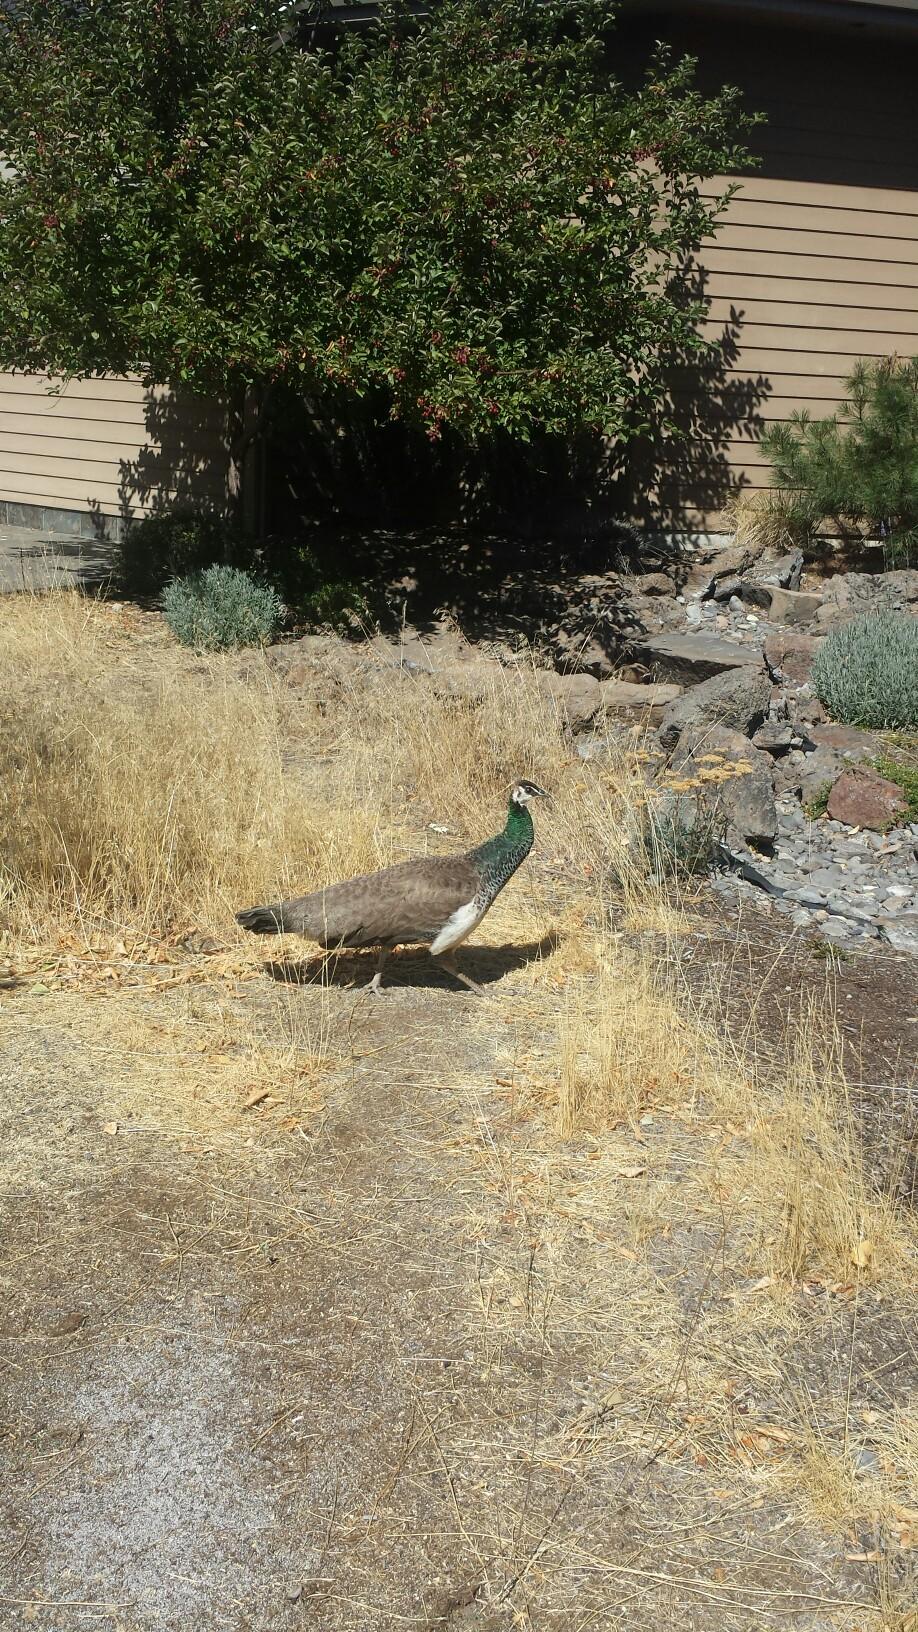 Peacock in the Desert